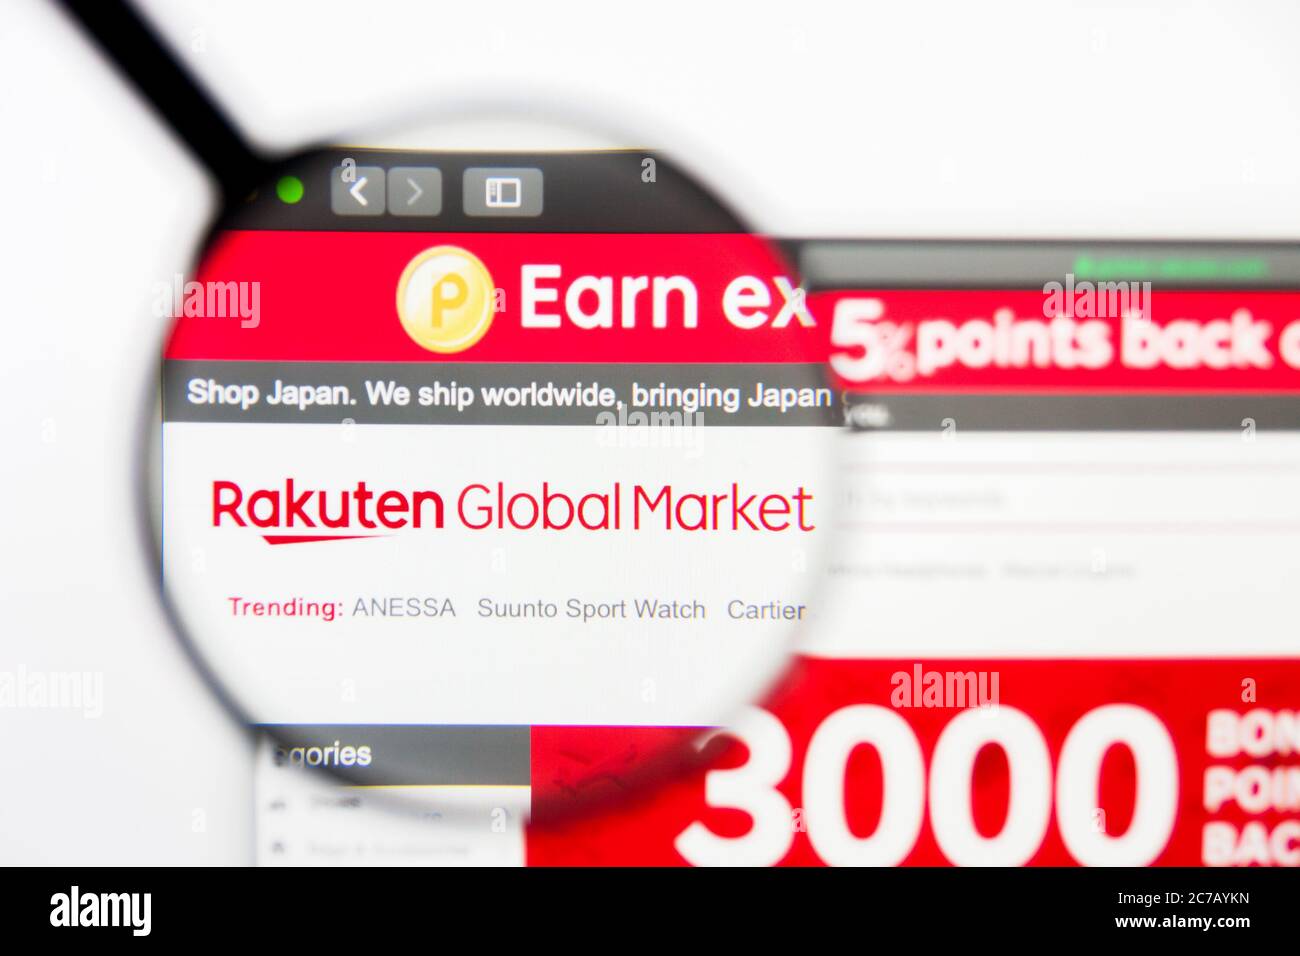 Los Angeles, California, USA - 23 Marzo 2019: Editoriale illustrativo della homepage del sito web di Rakuten. Logo Rakuten visibile sullo schermo del display. Foto Stock